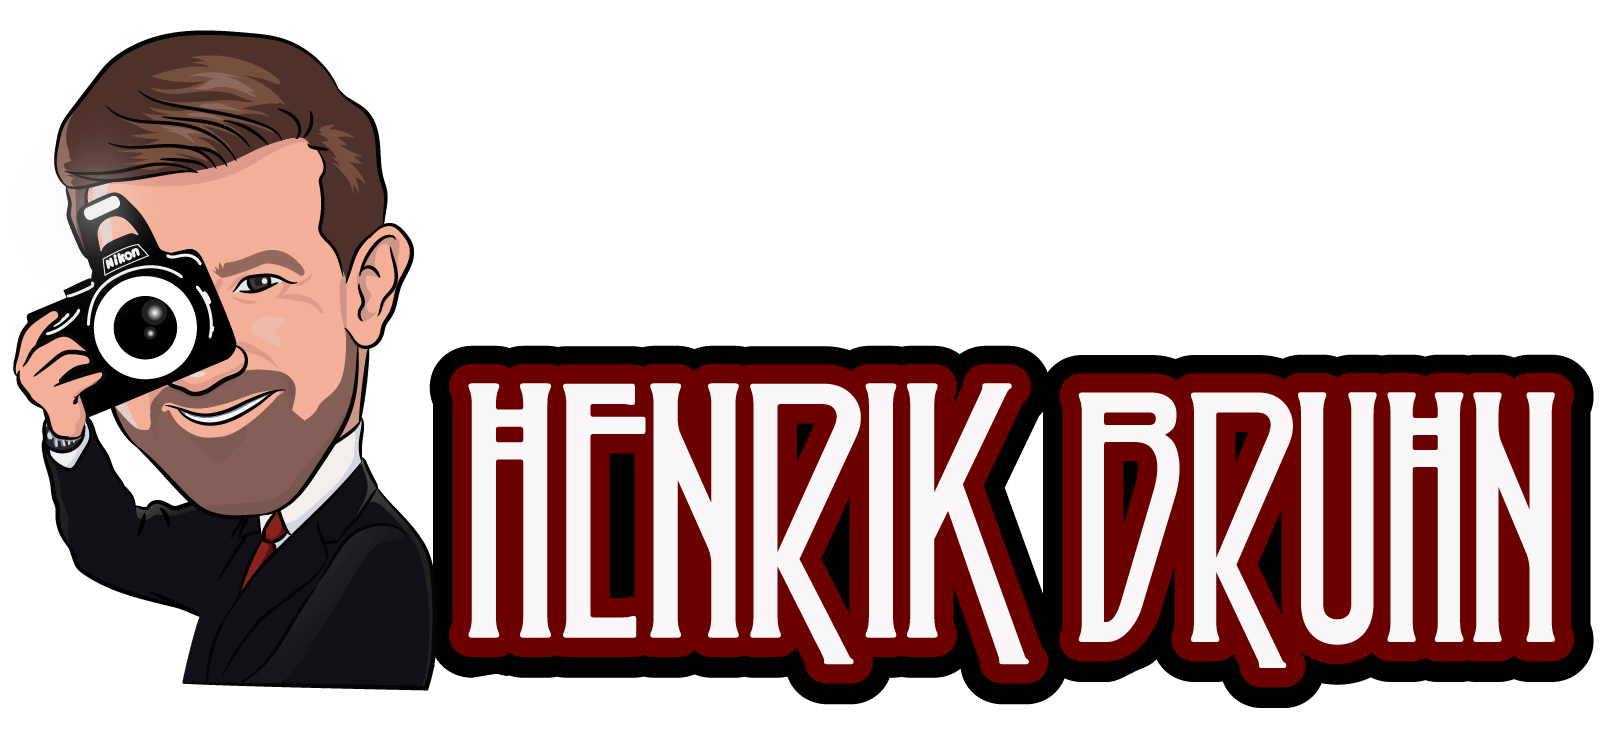 Henrik Bruhn - Logo